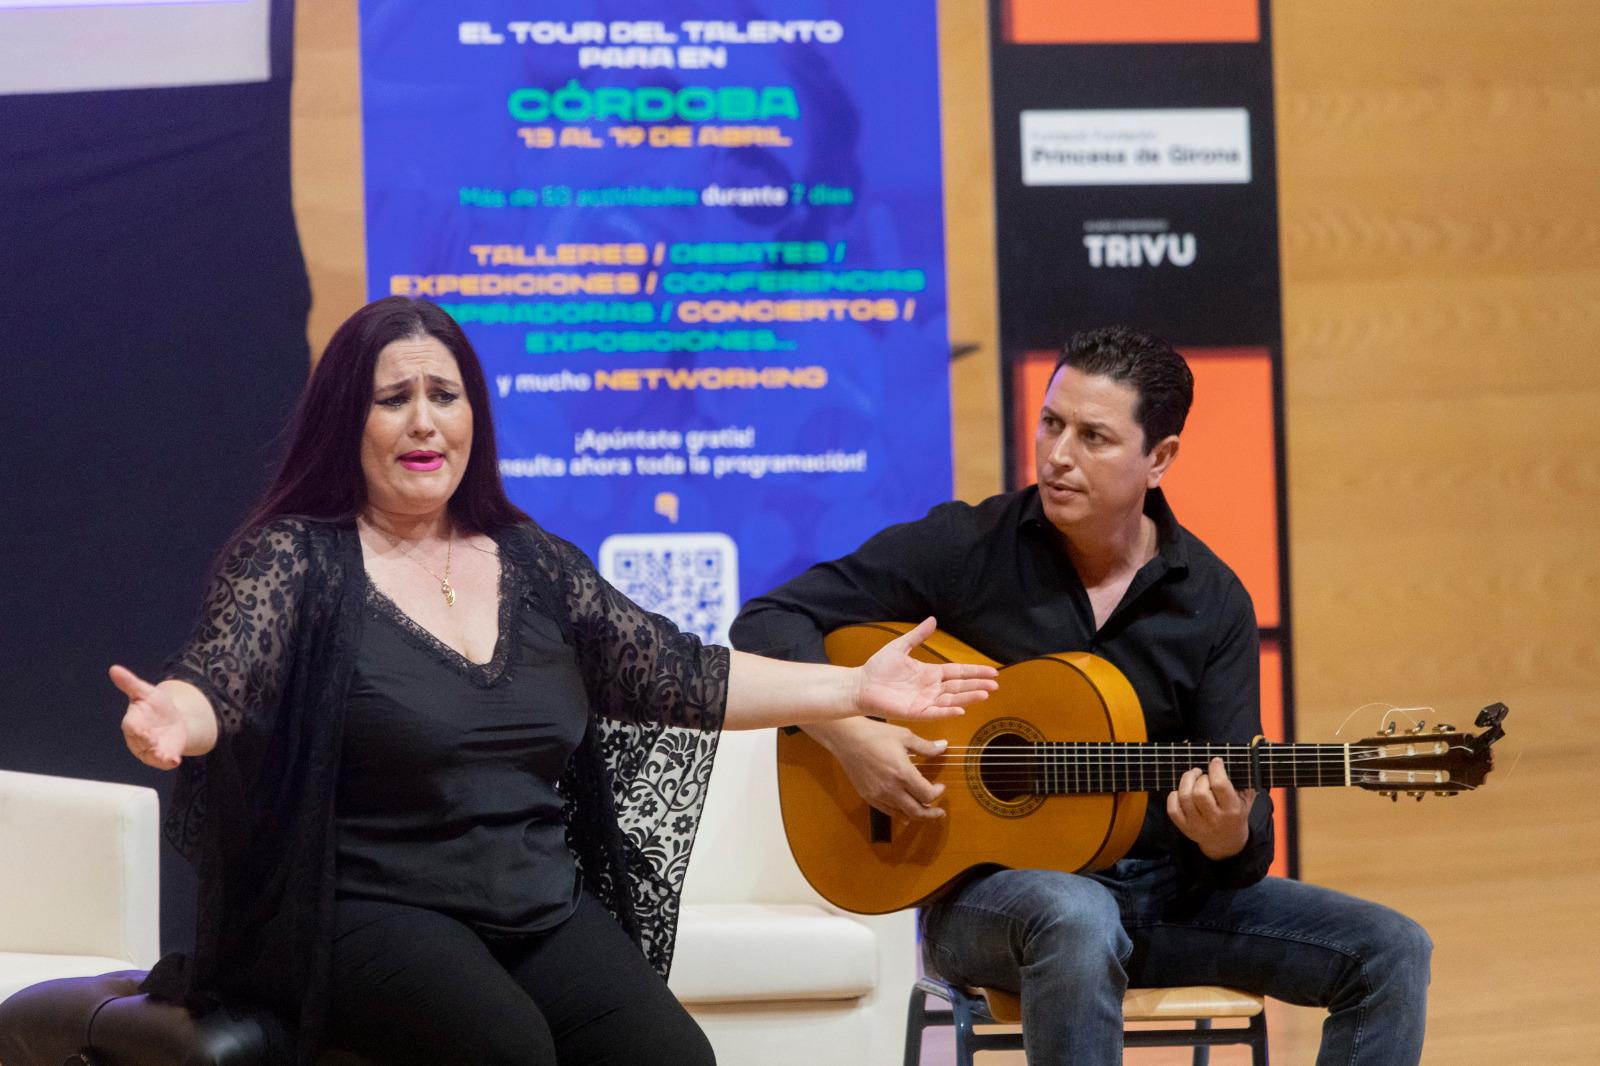 Arte contemporáneo, flamenco, oportunidades laborales de los videojuegos, música, nuevas tecnologías e innovación disruptiva, centran las propuestas de la segunda jornada del Tour del Talento en Córdoba